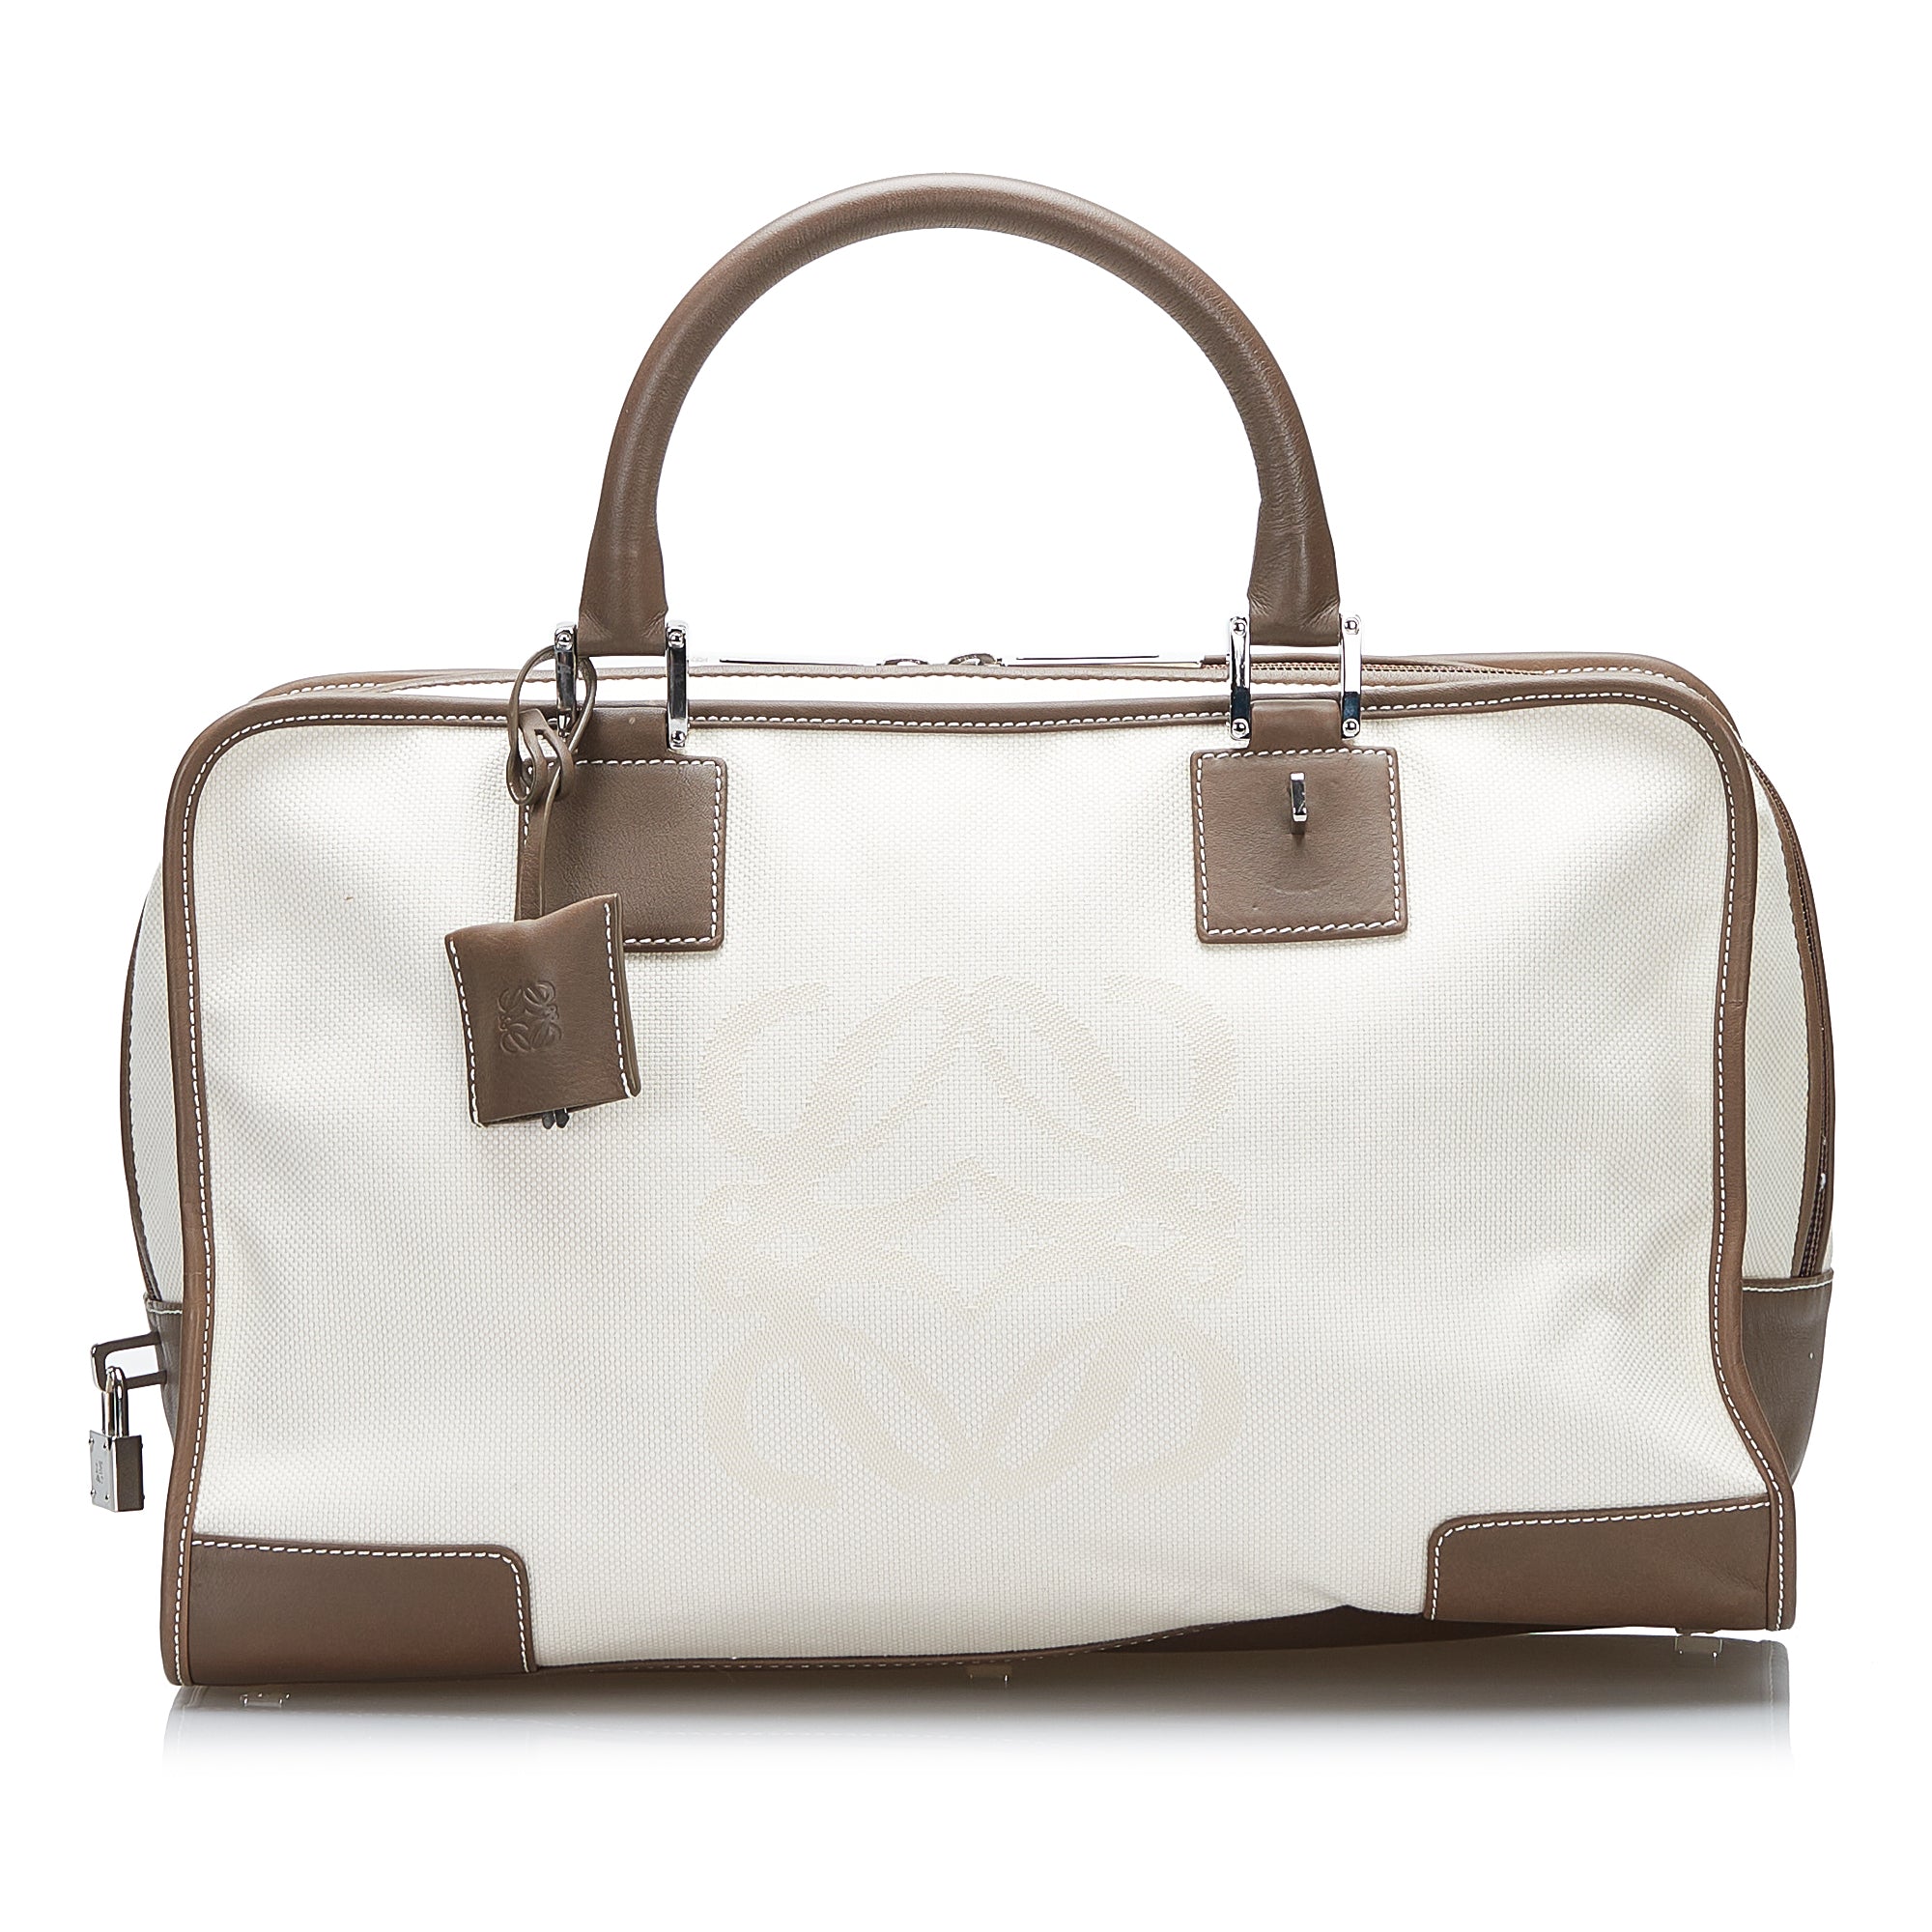 Celine 16 Mini Bag | Loewe Amazona Travel bag 402240 | Cra-wallonieShops